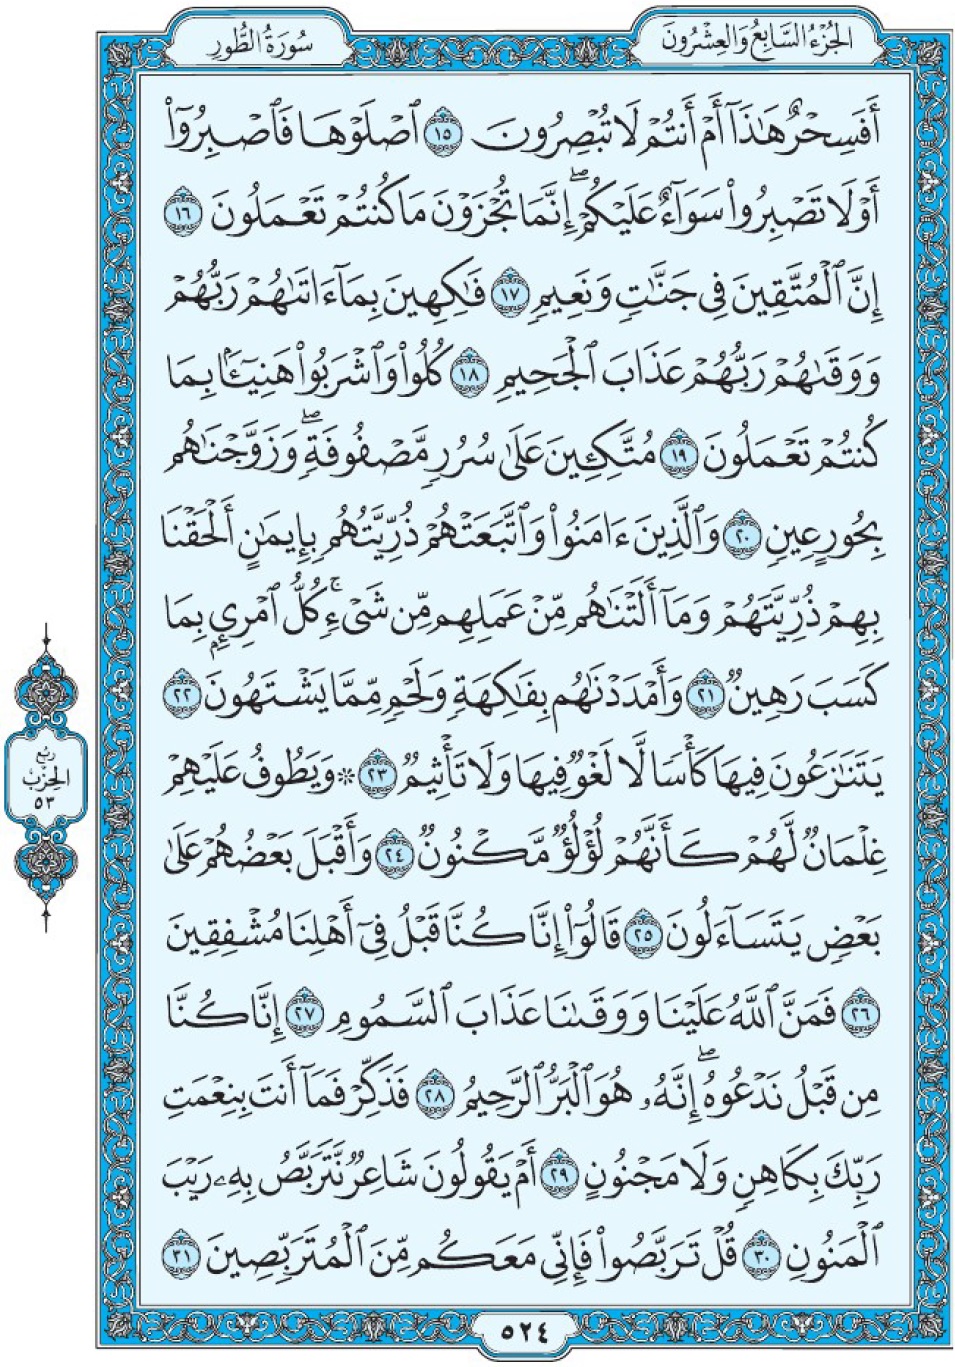 Коран Мединский мусхаф страница 524, ат-Тур, аят 15-31